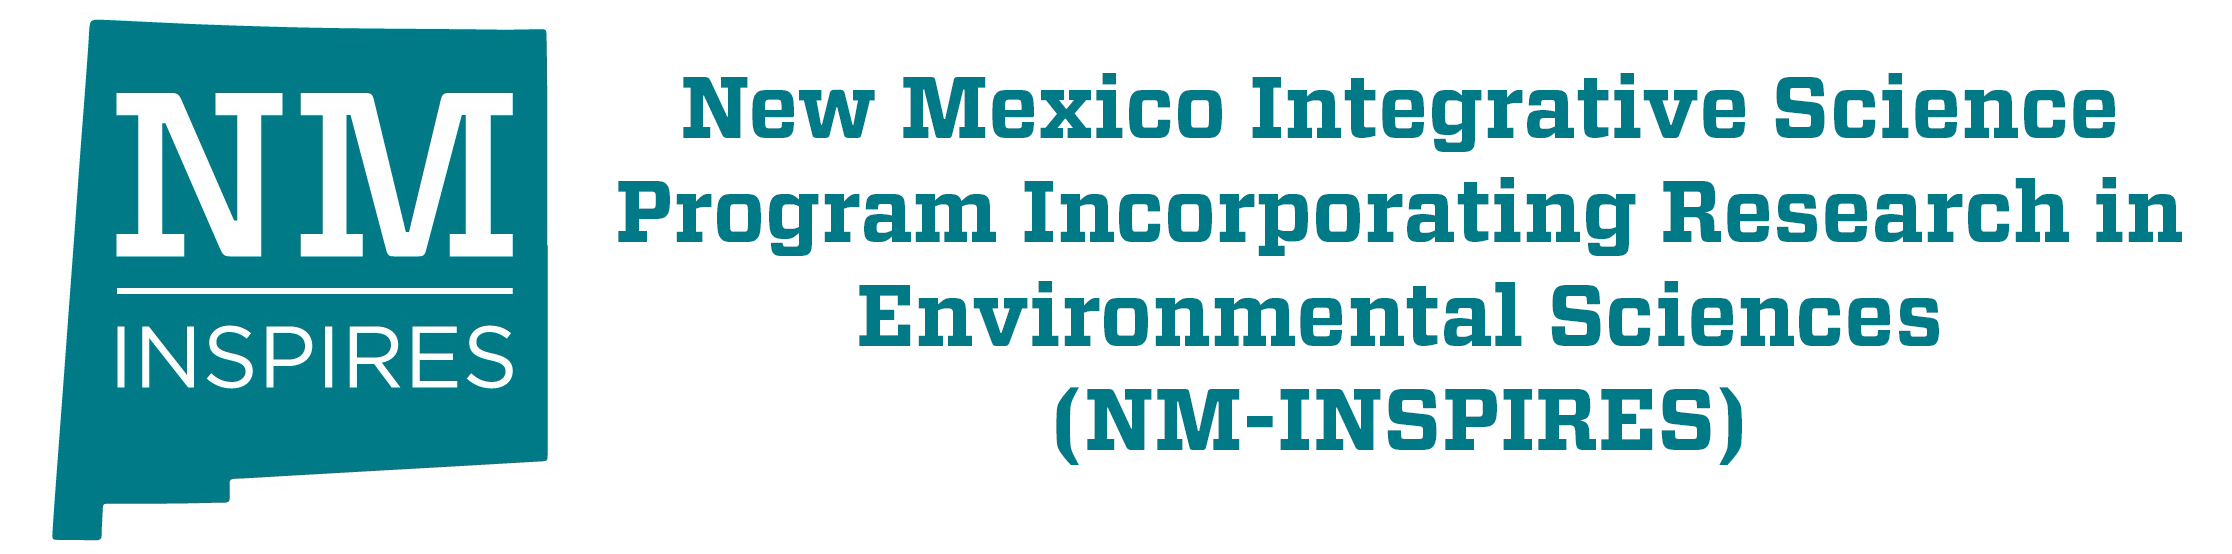 结合环境科学研究的新墨西哥综合科学计划 (NM-INSPIRES)